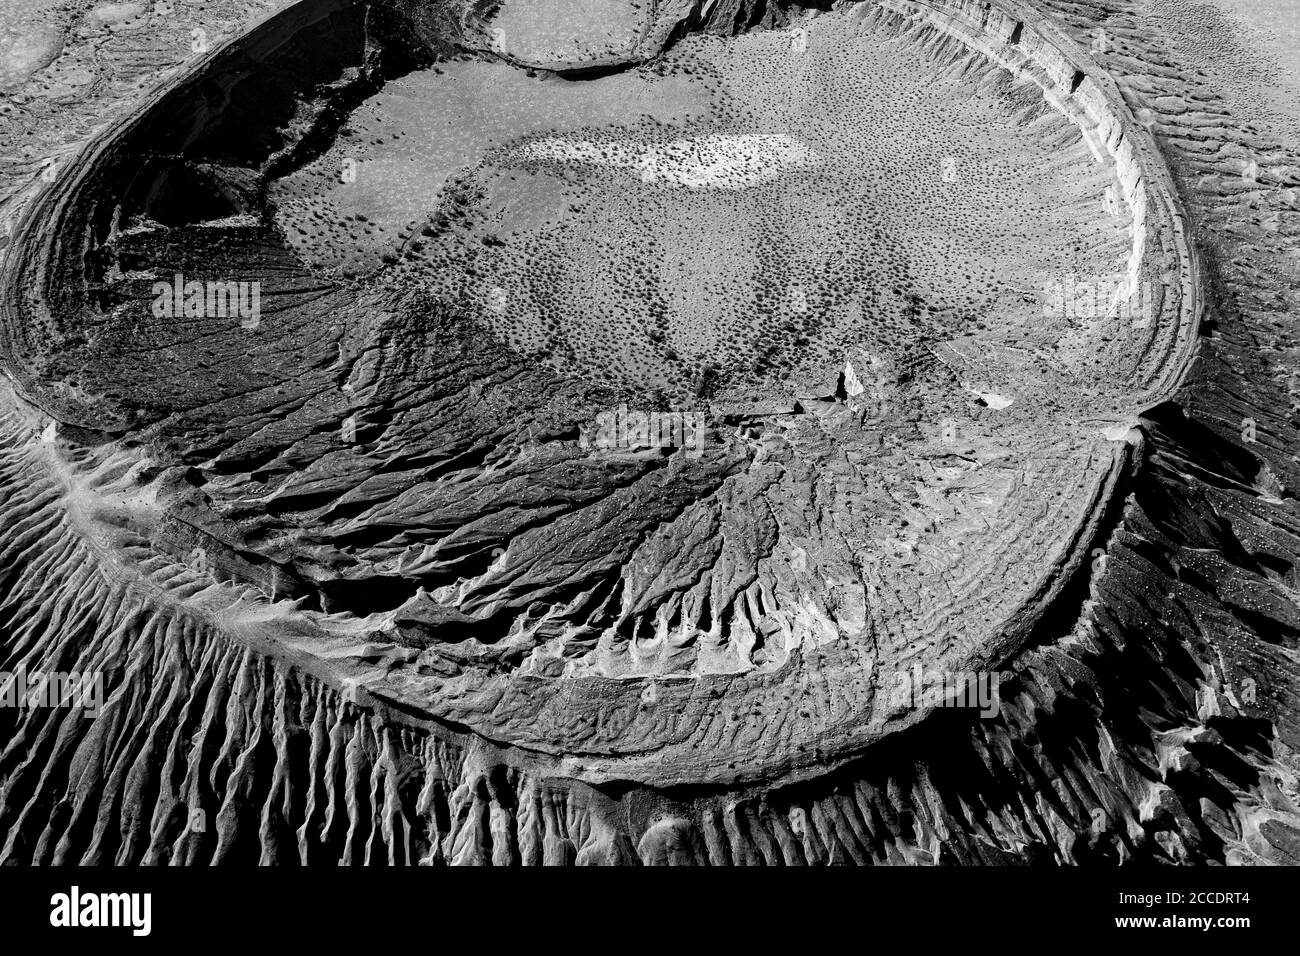 Luftaufnahme des maar-Typ Vulkankraters, Cater Cerro Colorado in den Bergen des El Pinacate Biosphere Reserve und der großen Altar Wüste in Sonora, Mexiko. Erbe der Menschheit durch die unesco. Typisches Wüstenökosystem in Arizona, nur wenige Kilometer vom Ort entfernt. Der Vulkan ist der zweitgrößte in einer ausgedehnten Kette von Vulkankegeln und Krater. Dieser Krater unterscheidet sich von den anderen durch seine rötliche Farbe und seine Bildung mit Tonmaterial (Foto von Luis Gutierrez / Norte Photo) Vista aerea del cráter volcánico tipo maar, cater Cerro Colorado en la sierra de la Reserva de la Bio Stockfoto